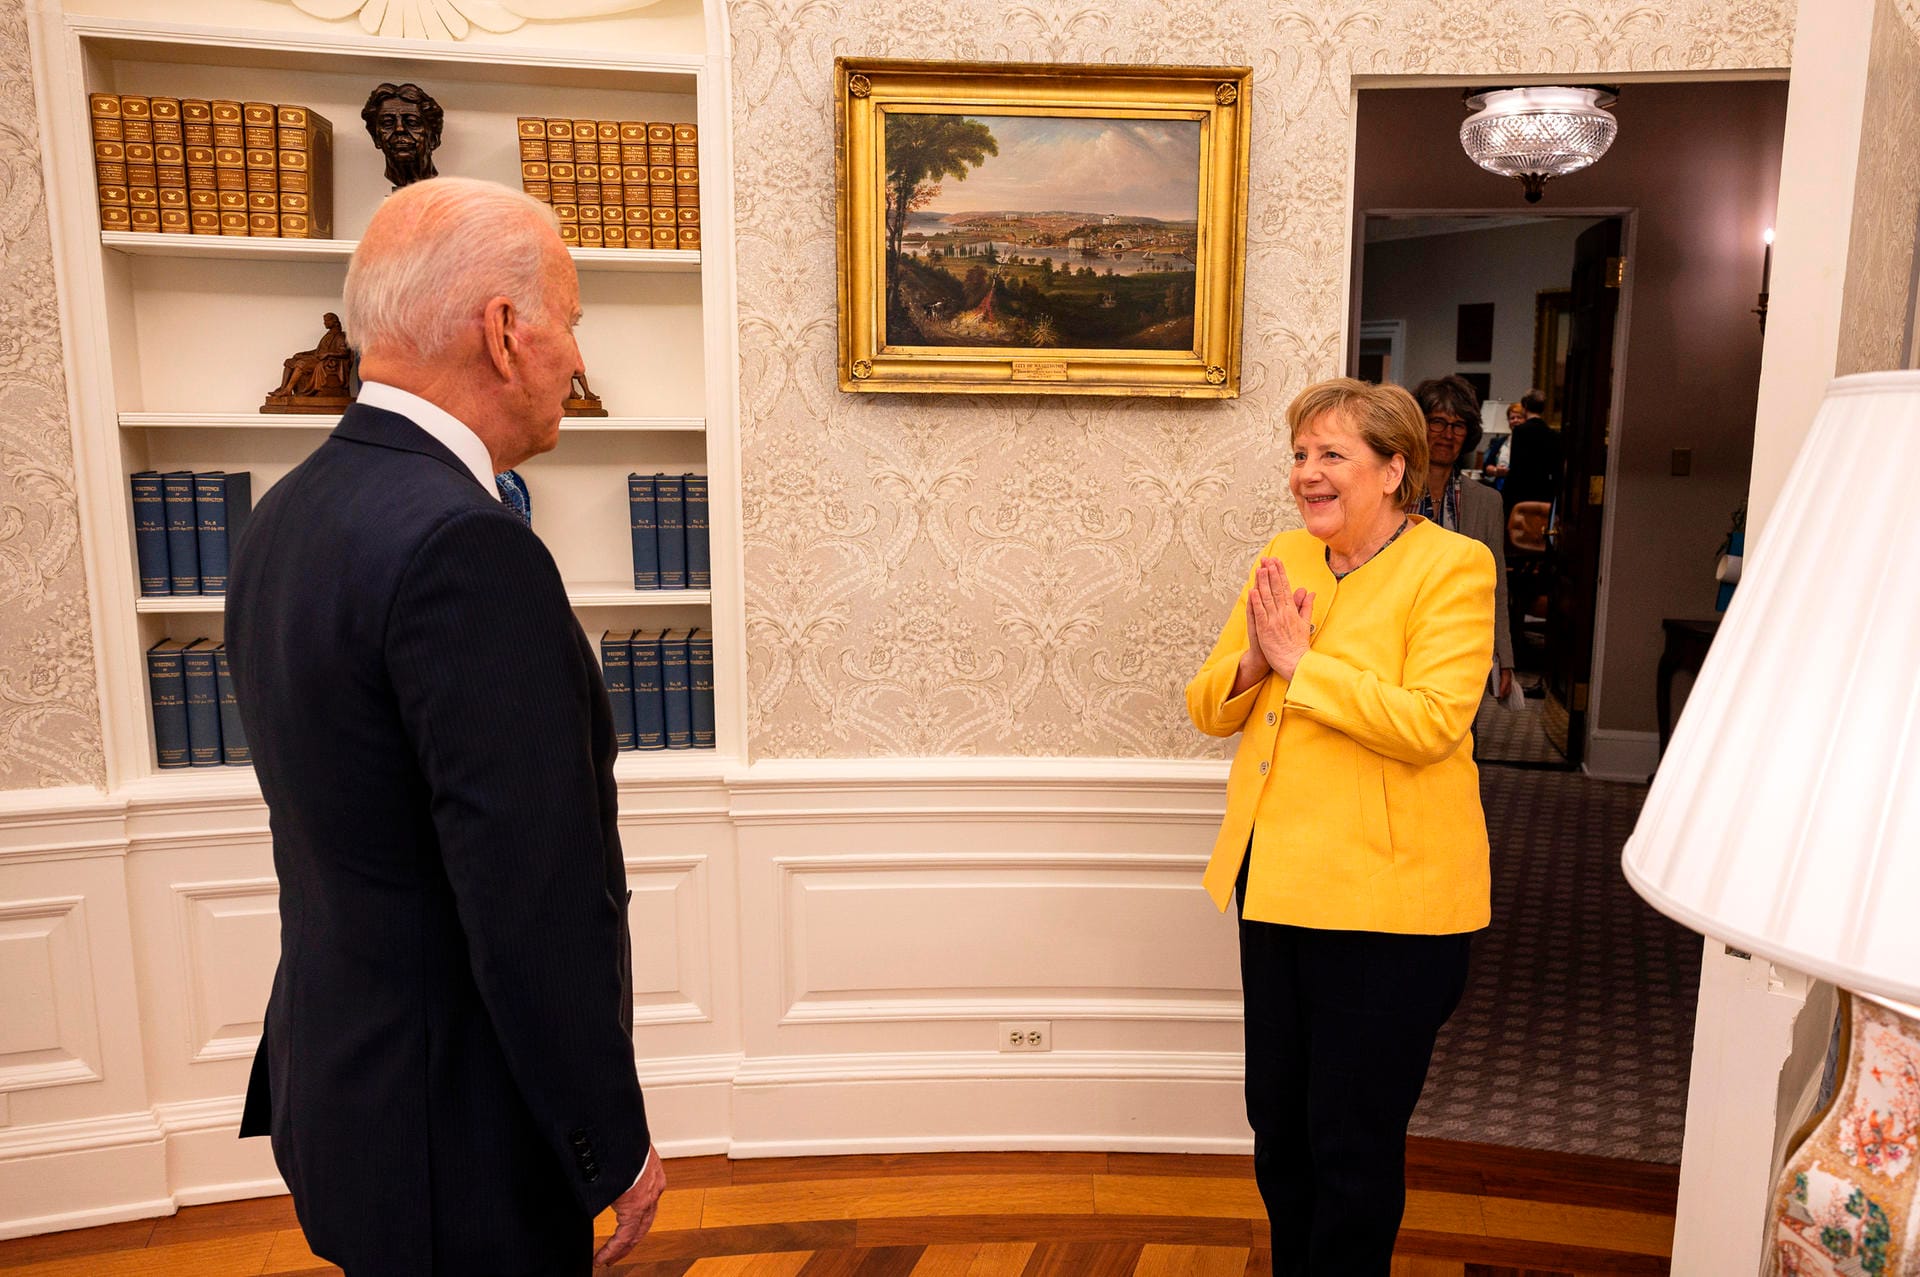 15. Juli 2021: Nach anstrengenden Jahren mit Trump und trotz diverser Differenzen betonen Merkel und Joe Biden – der vierte US-Präsident in ihrer Amtszeit – die deutsch-amerikanische Partnerschaft. Die "liebe Freundin", wie Biden sie nennt, hatte zuvor in Washington von der Johns Hopkins-Universität die 18. Ehrendoktorwürde erhalten.